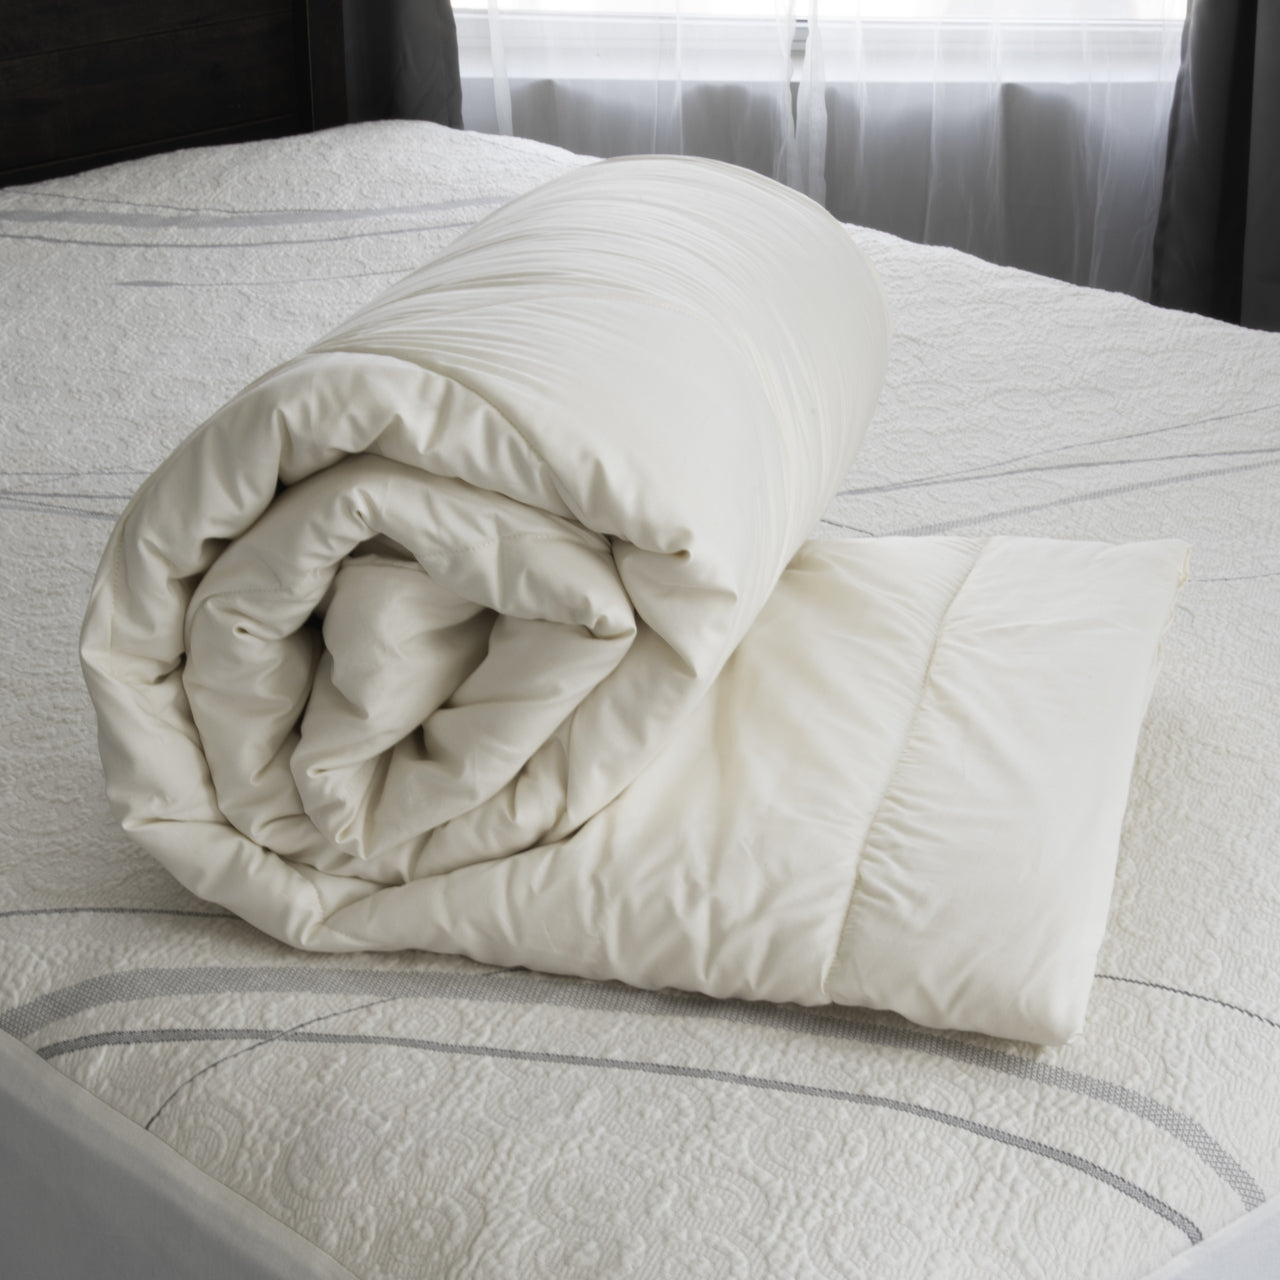 Suite Sleep Washable Wool Comforter